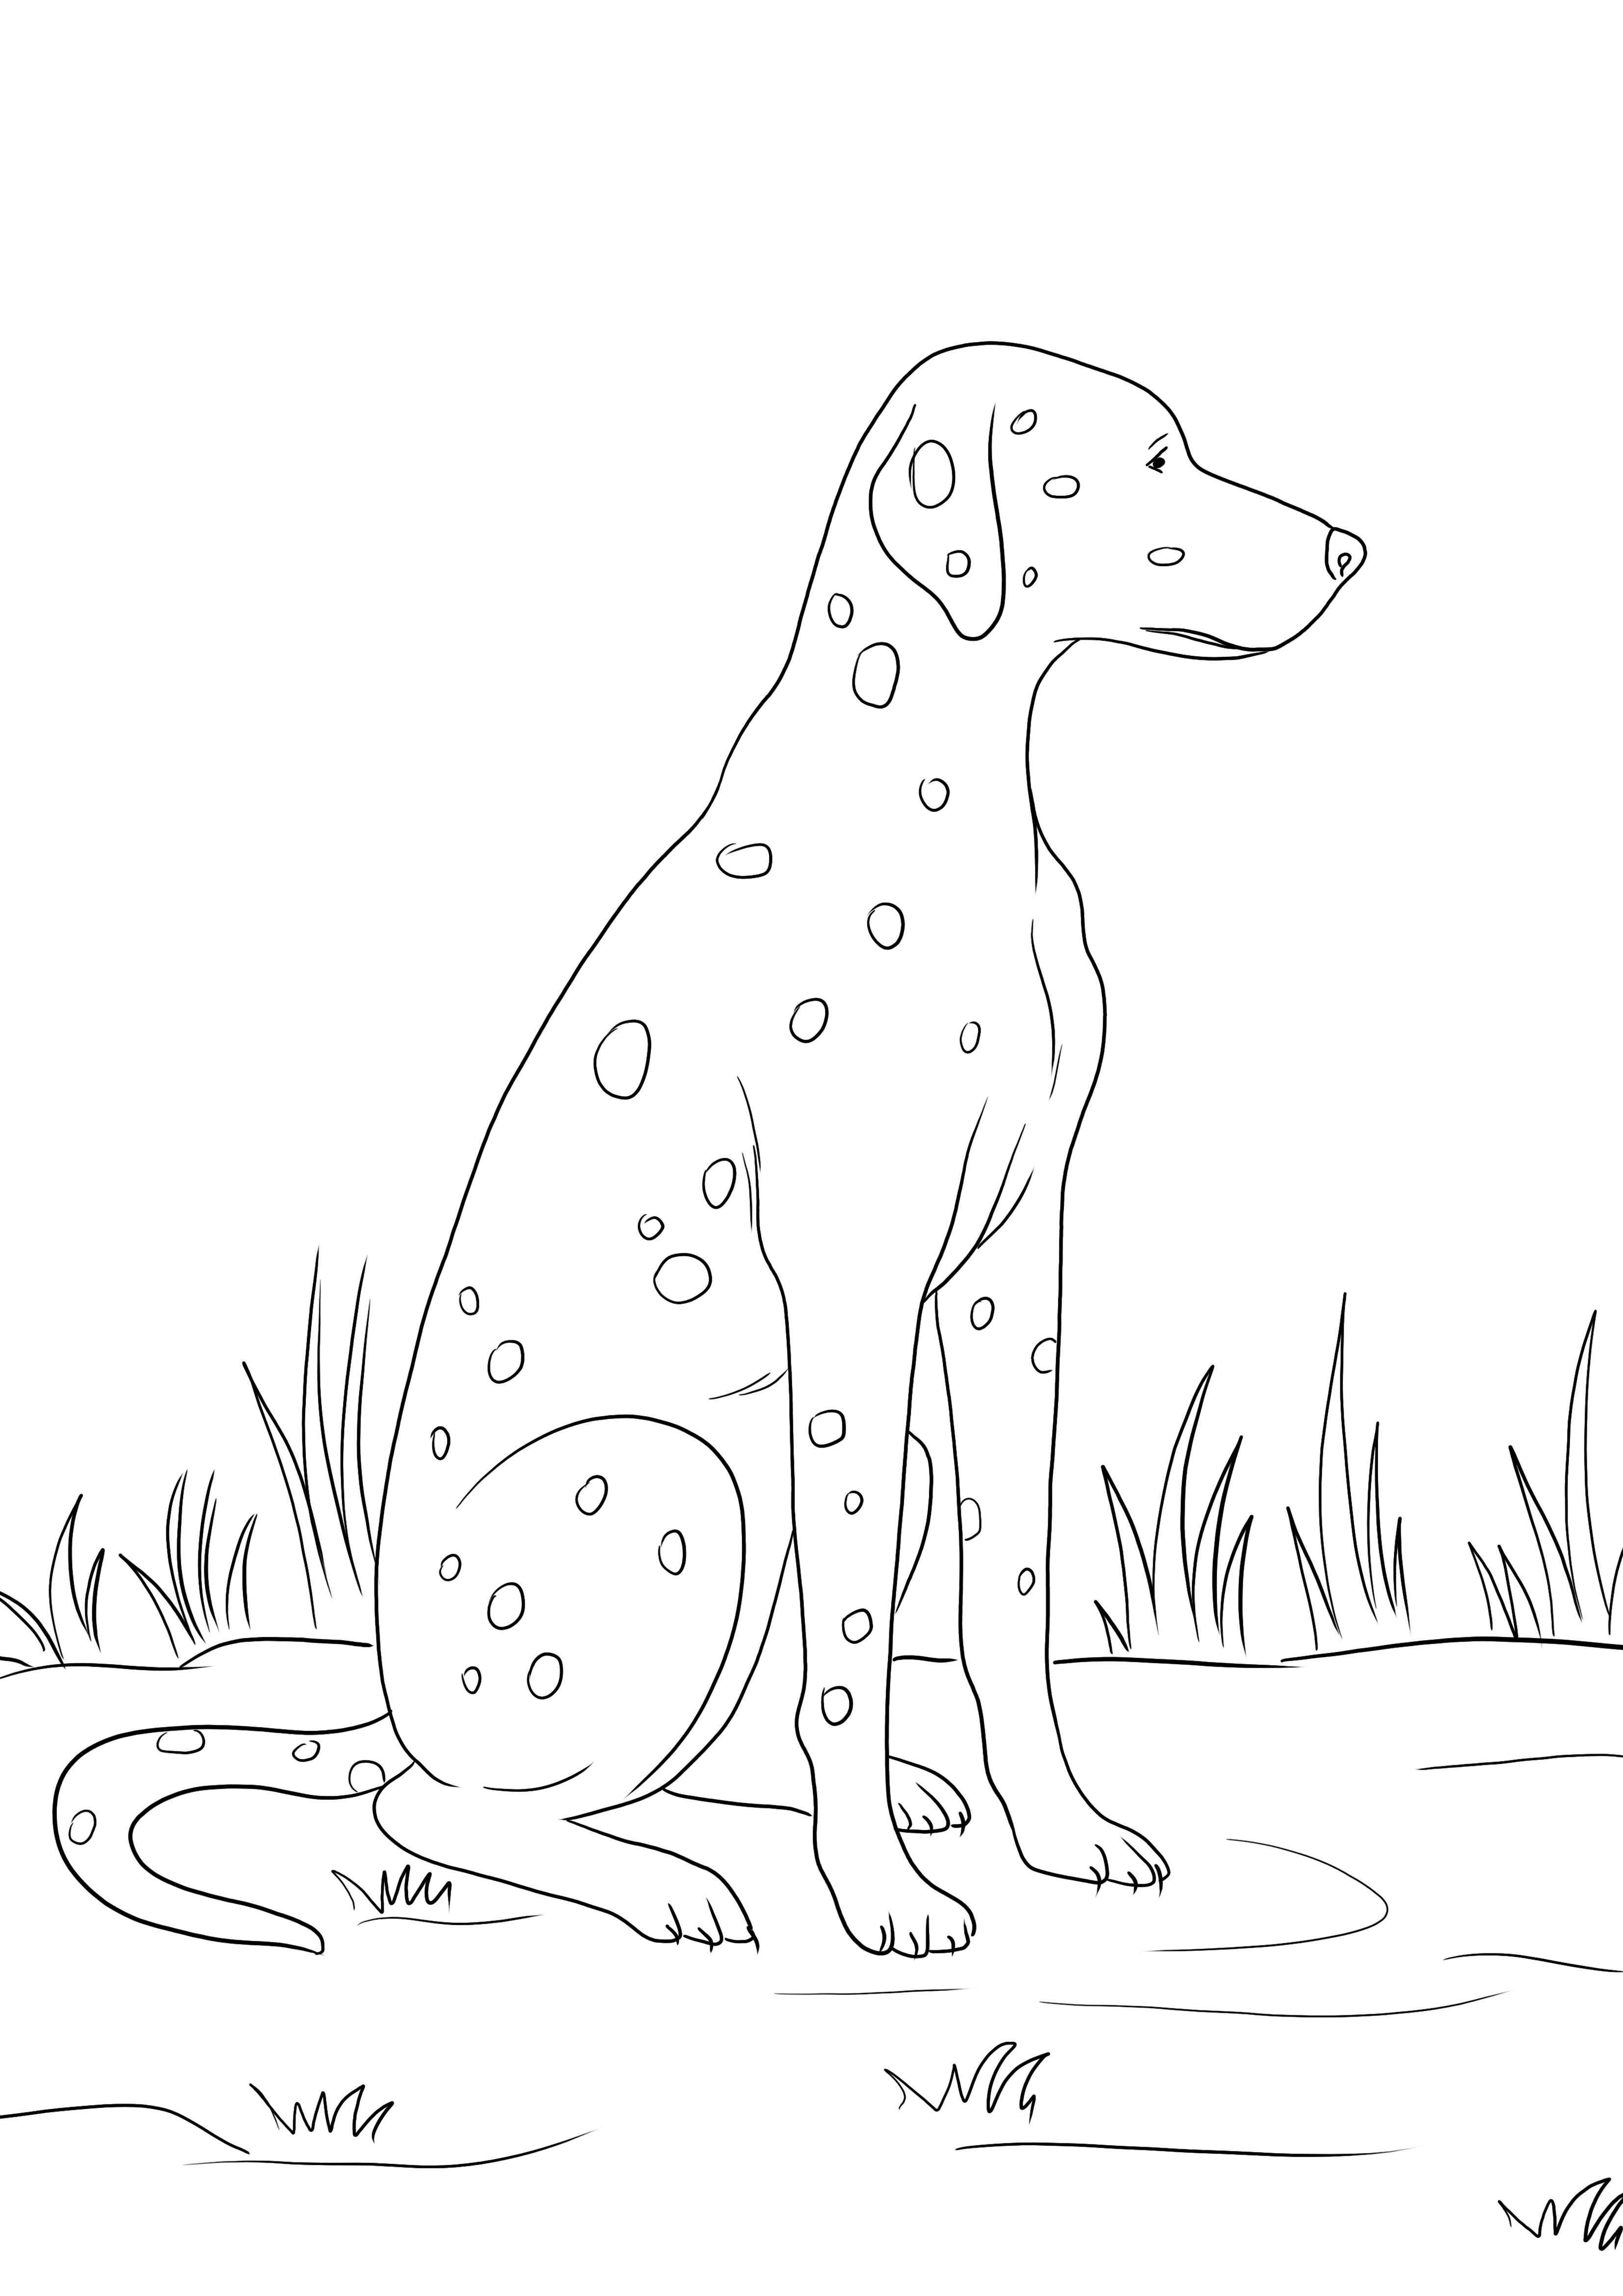 Uma impressão gratuita de um cão dálmata para colorir simples para crianças